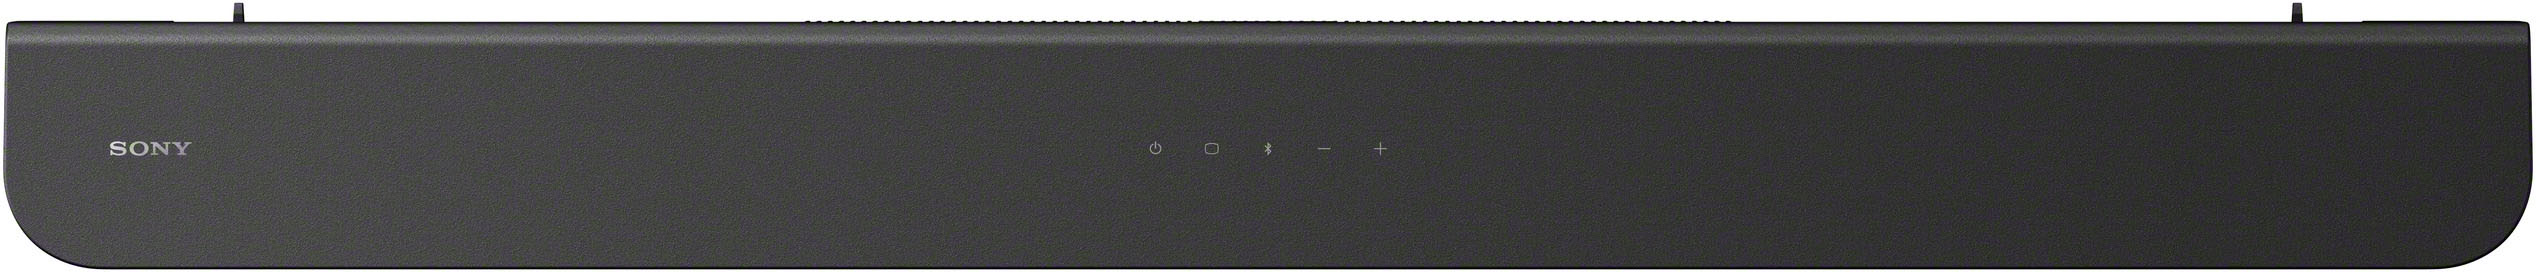 Sony HT-S400 2.1ch Soundbar with powerful wireless Subwoofer Black